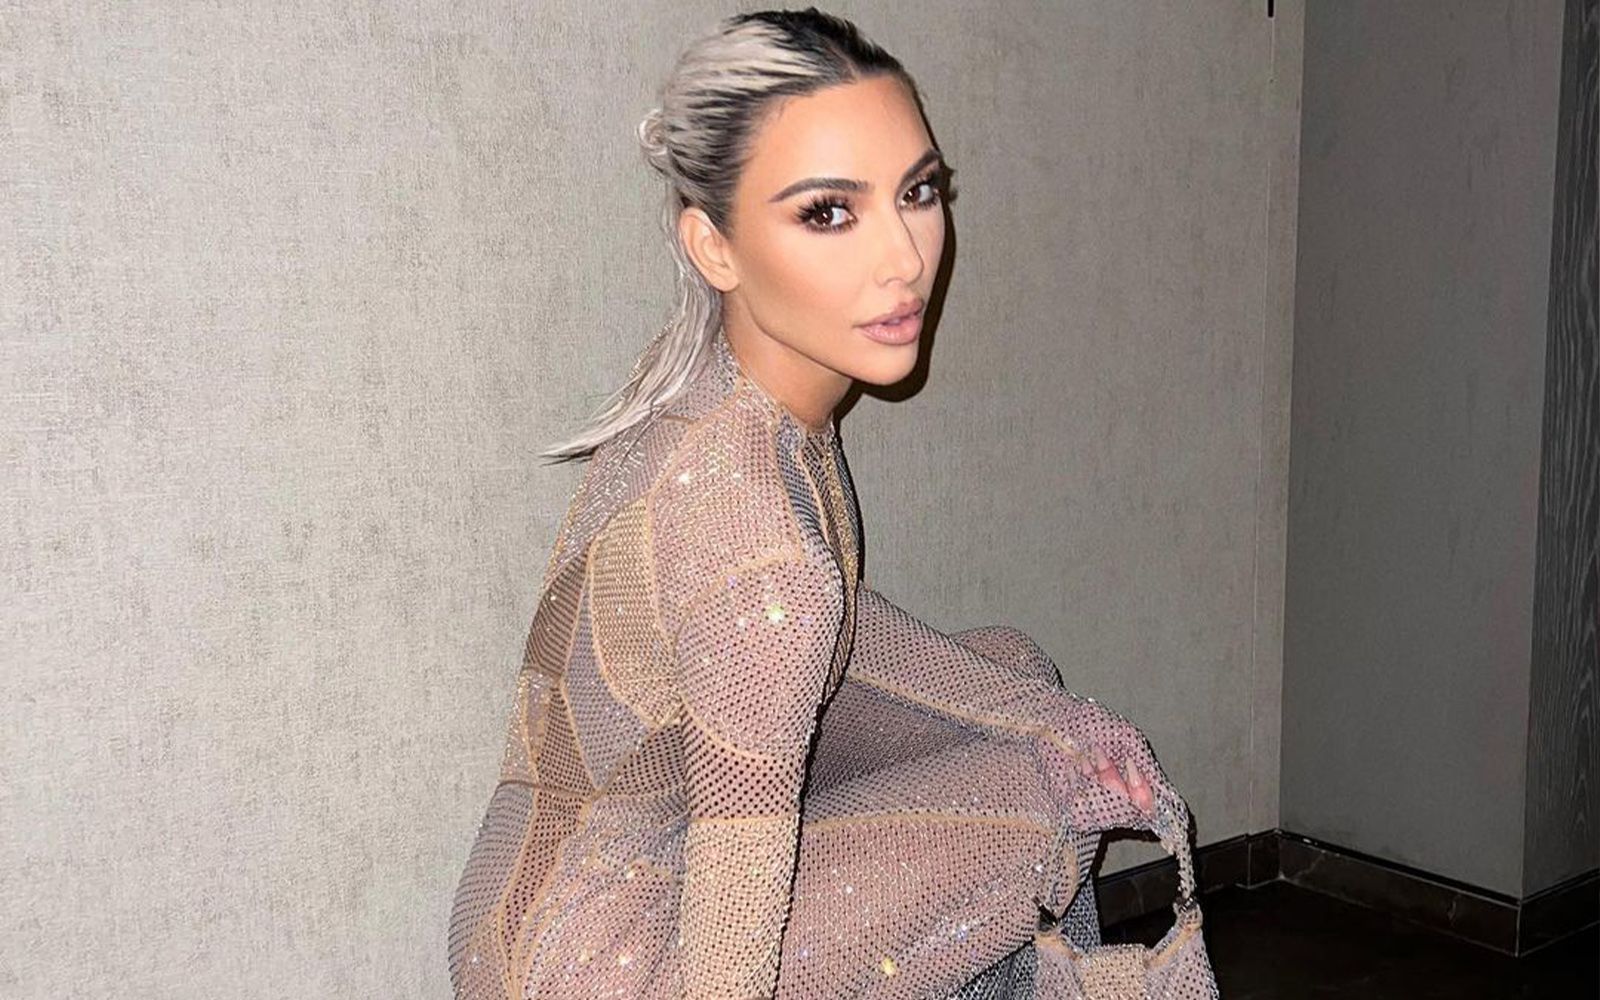 Kim Kardashian's Birthday Tribute to Paris Hilton Is So 2000s